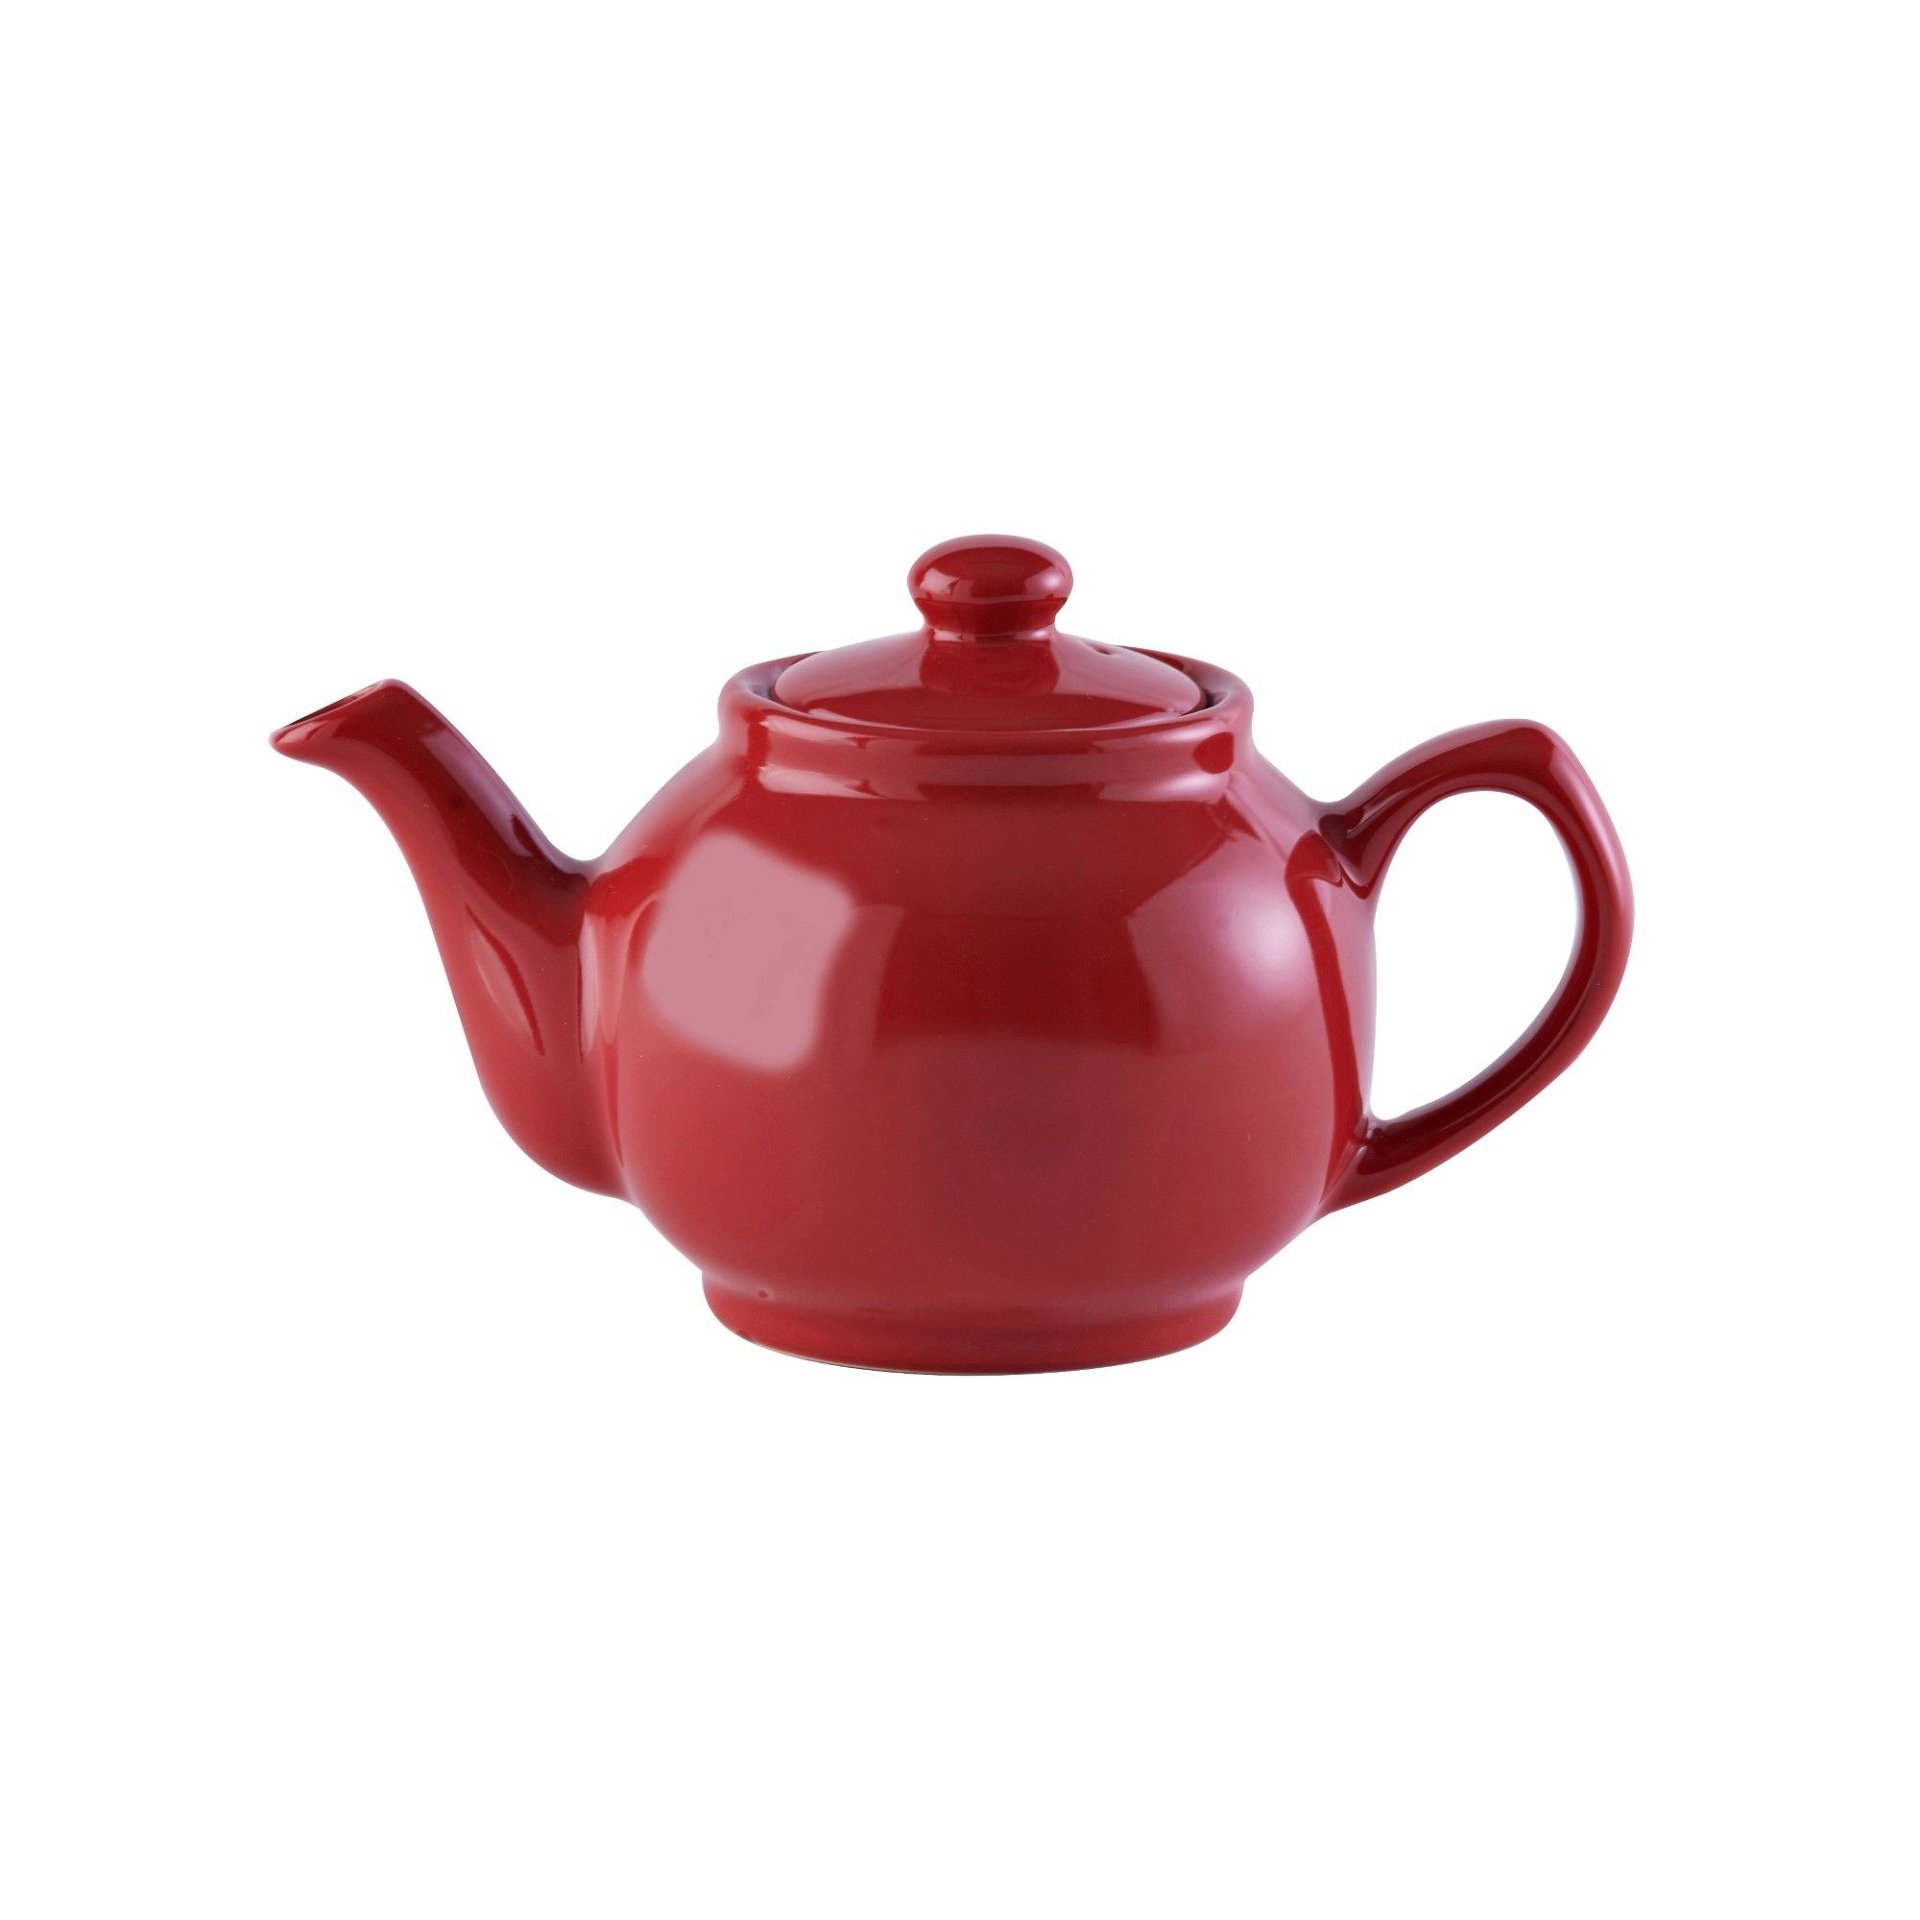 Price & Kensington Brights Red Porcelain 2 Cup Teapot Pottery Kitchen Tea Pot